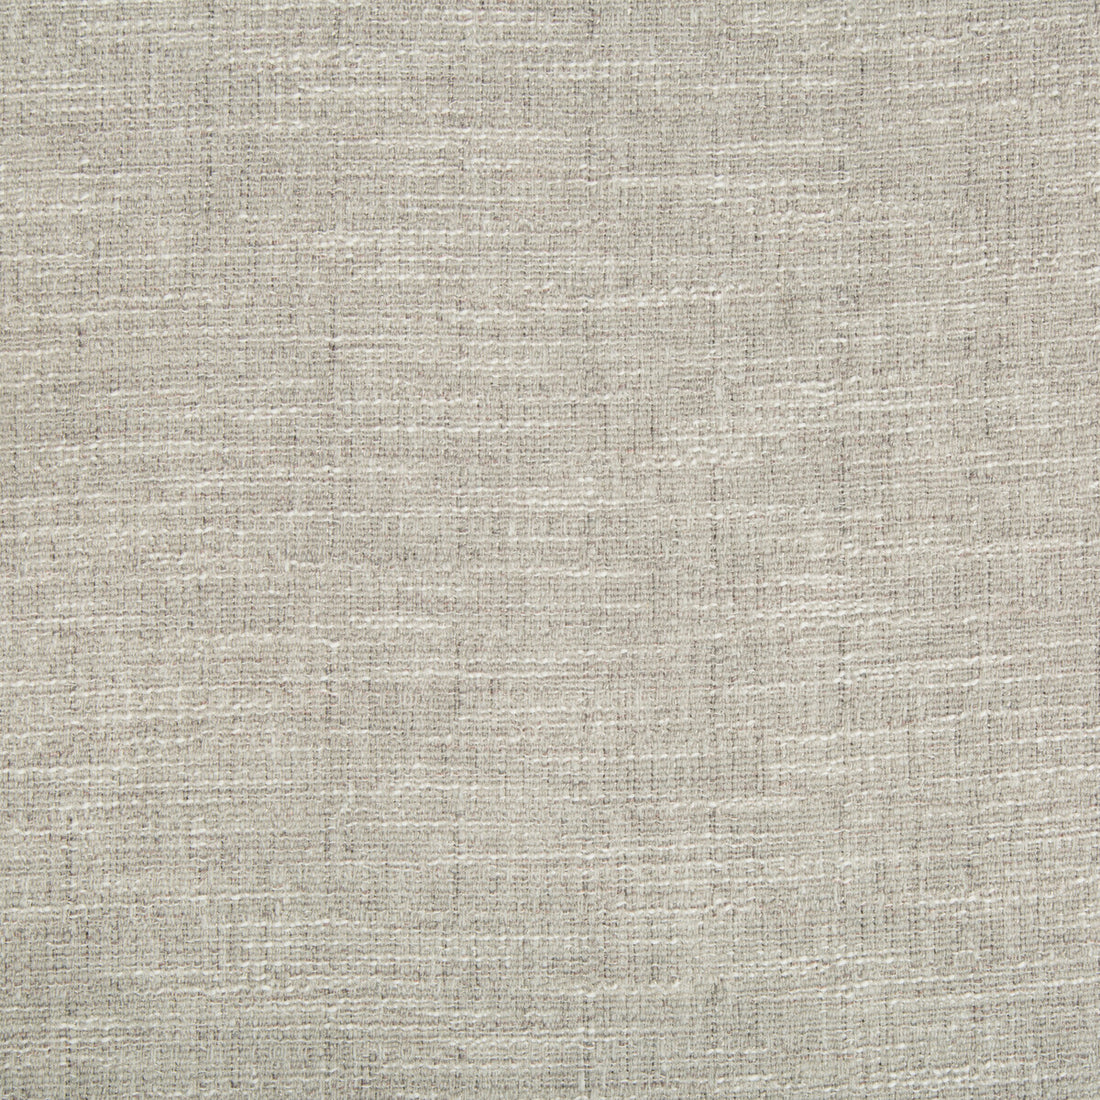 Kravet Basics fabric in 4318-11 color - pattern 4318.11.0 - by Kravet Basics